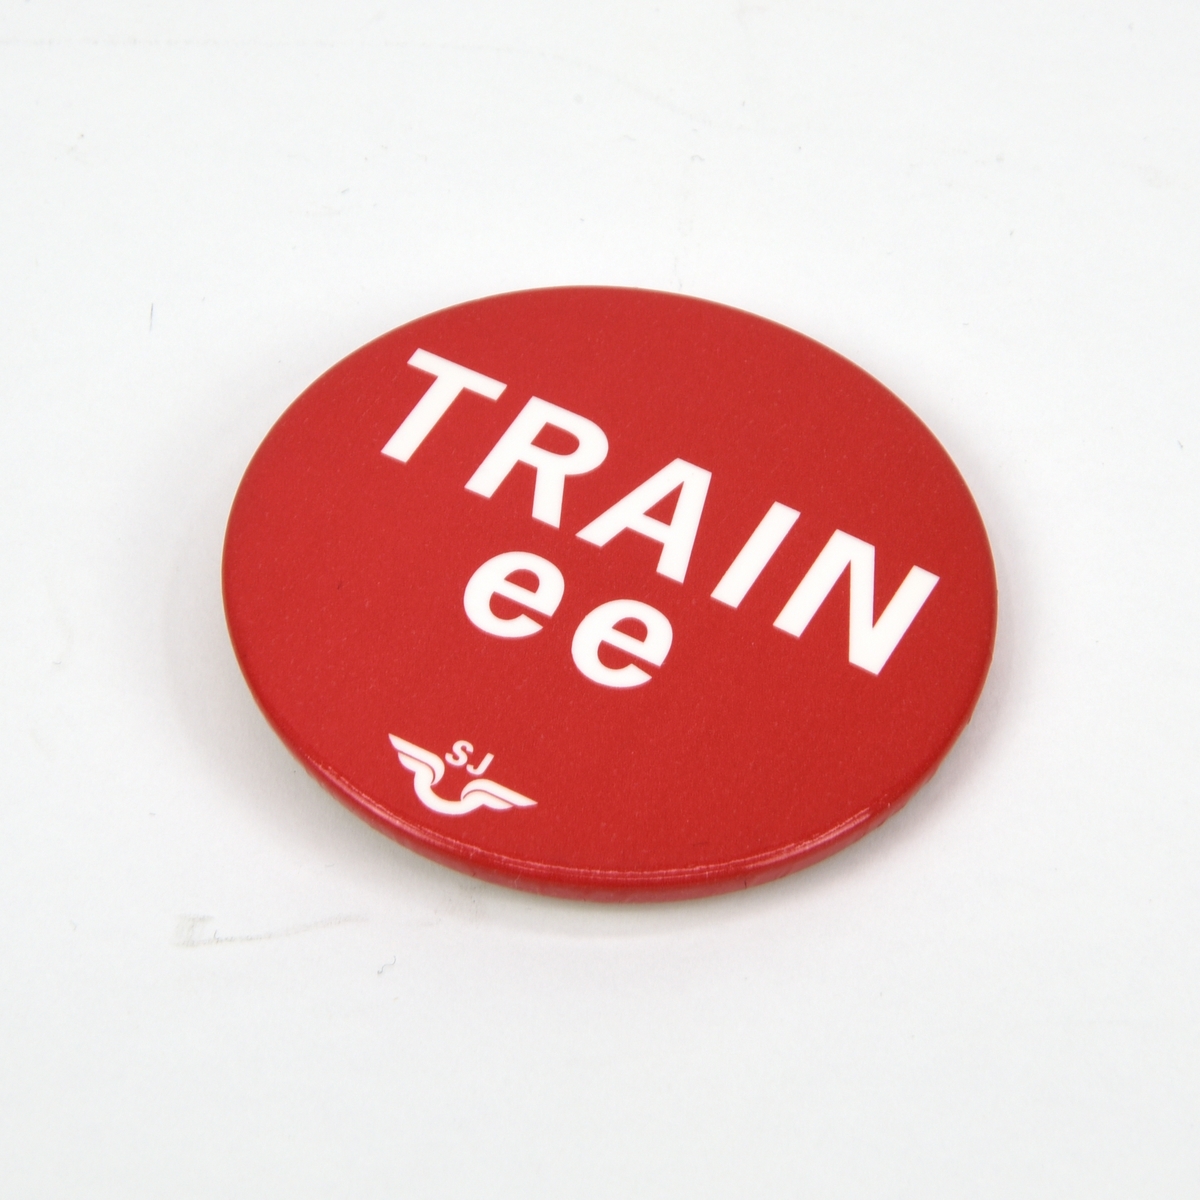 Rund pin med texten "TRAINee" i vitt mot röd botten. Under texten finns SJ:s logotyp. Baksidan består av vit plast med en infälld säkerhetsnål.